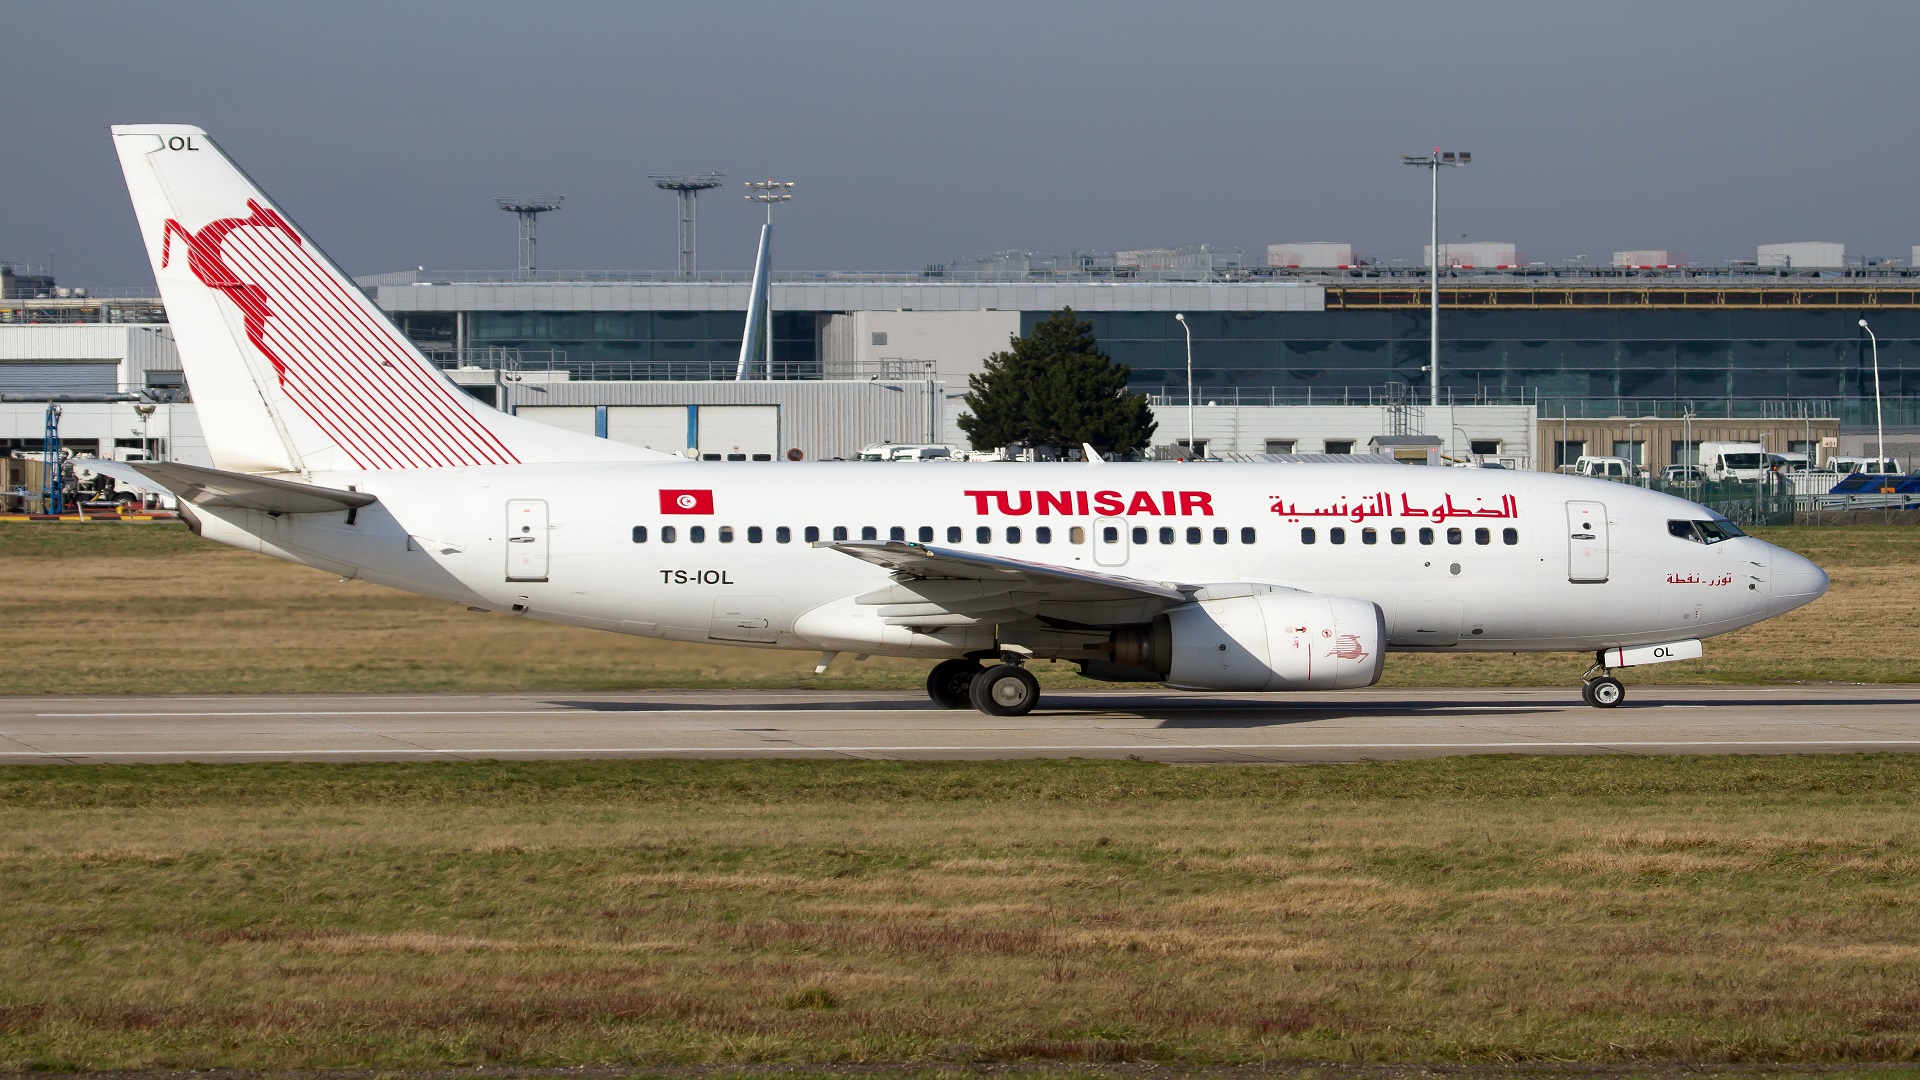  قادمون من غز.ة/ هذا موعد وصول طائرة الخطوط التونسية على متنها 57 تونسيا وأبنائهم وقريناتهم الف.لسطينيات 